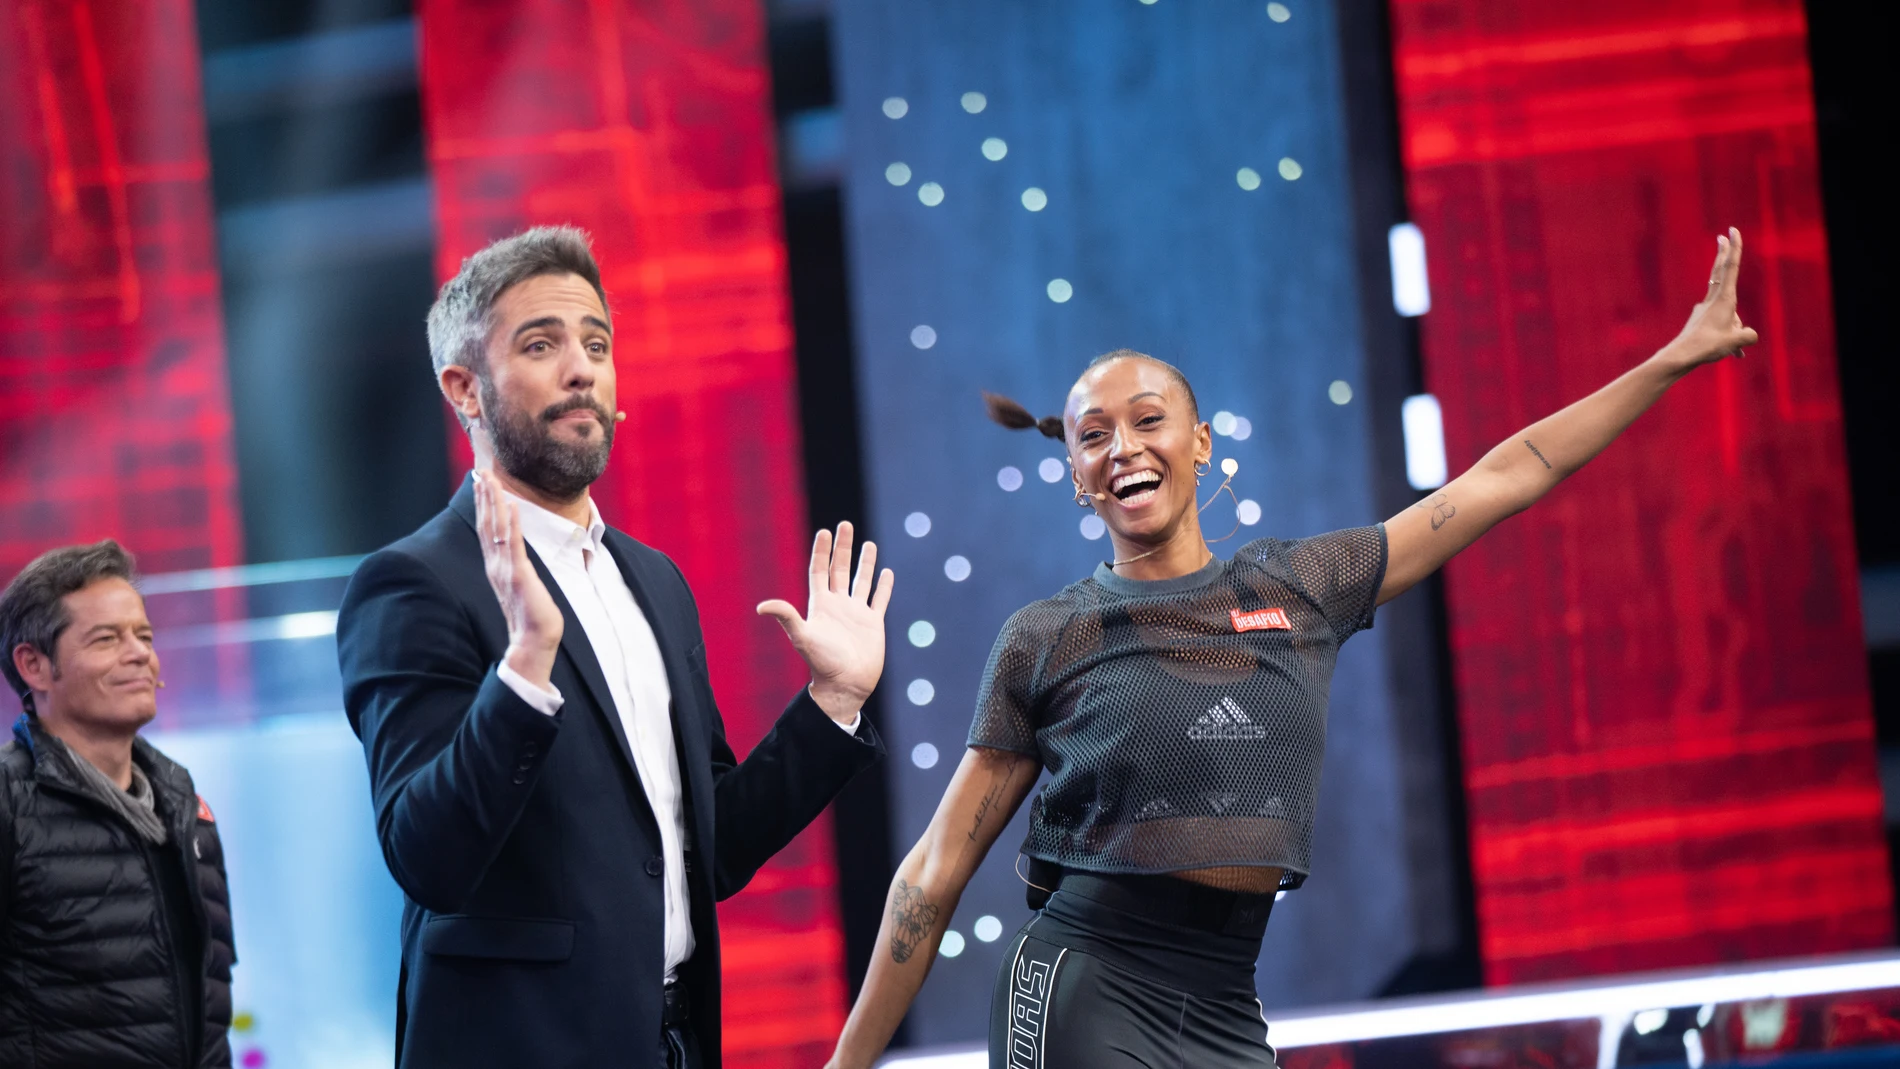 Ana Peleteiro gana el séptimo programa de ‘El Desafío’: “Mi ADN competitivo está latente”